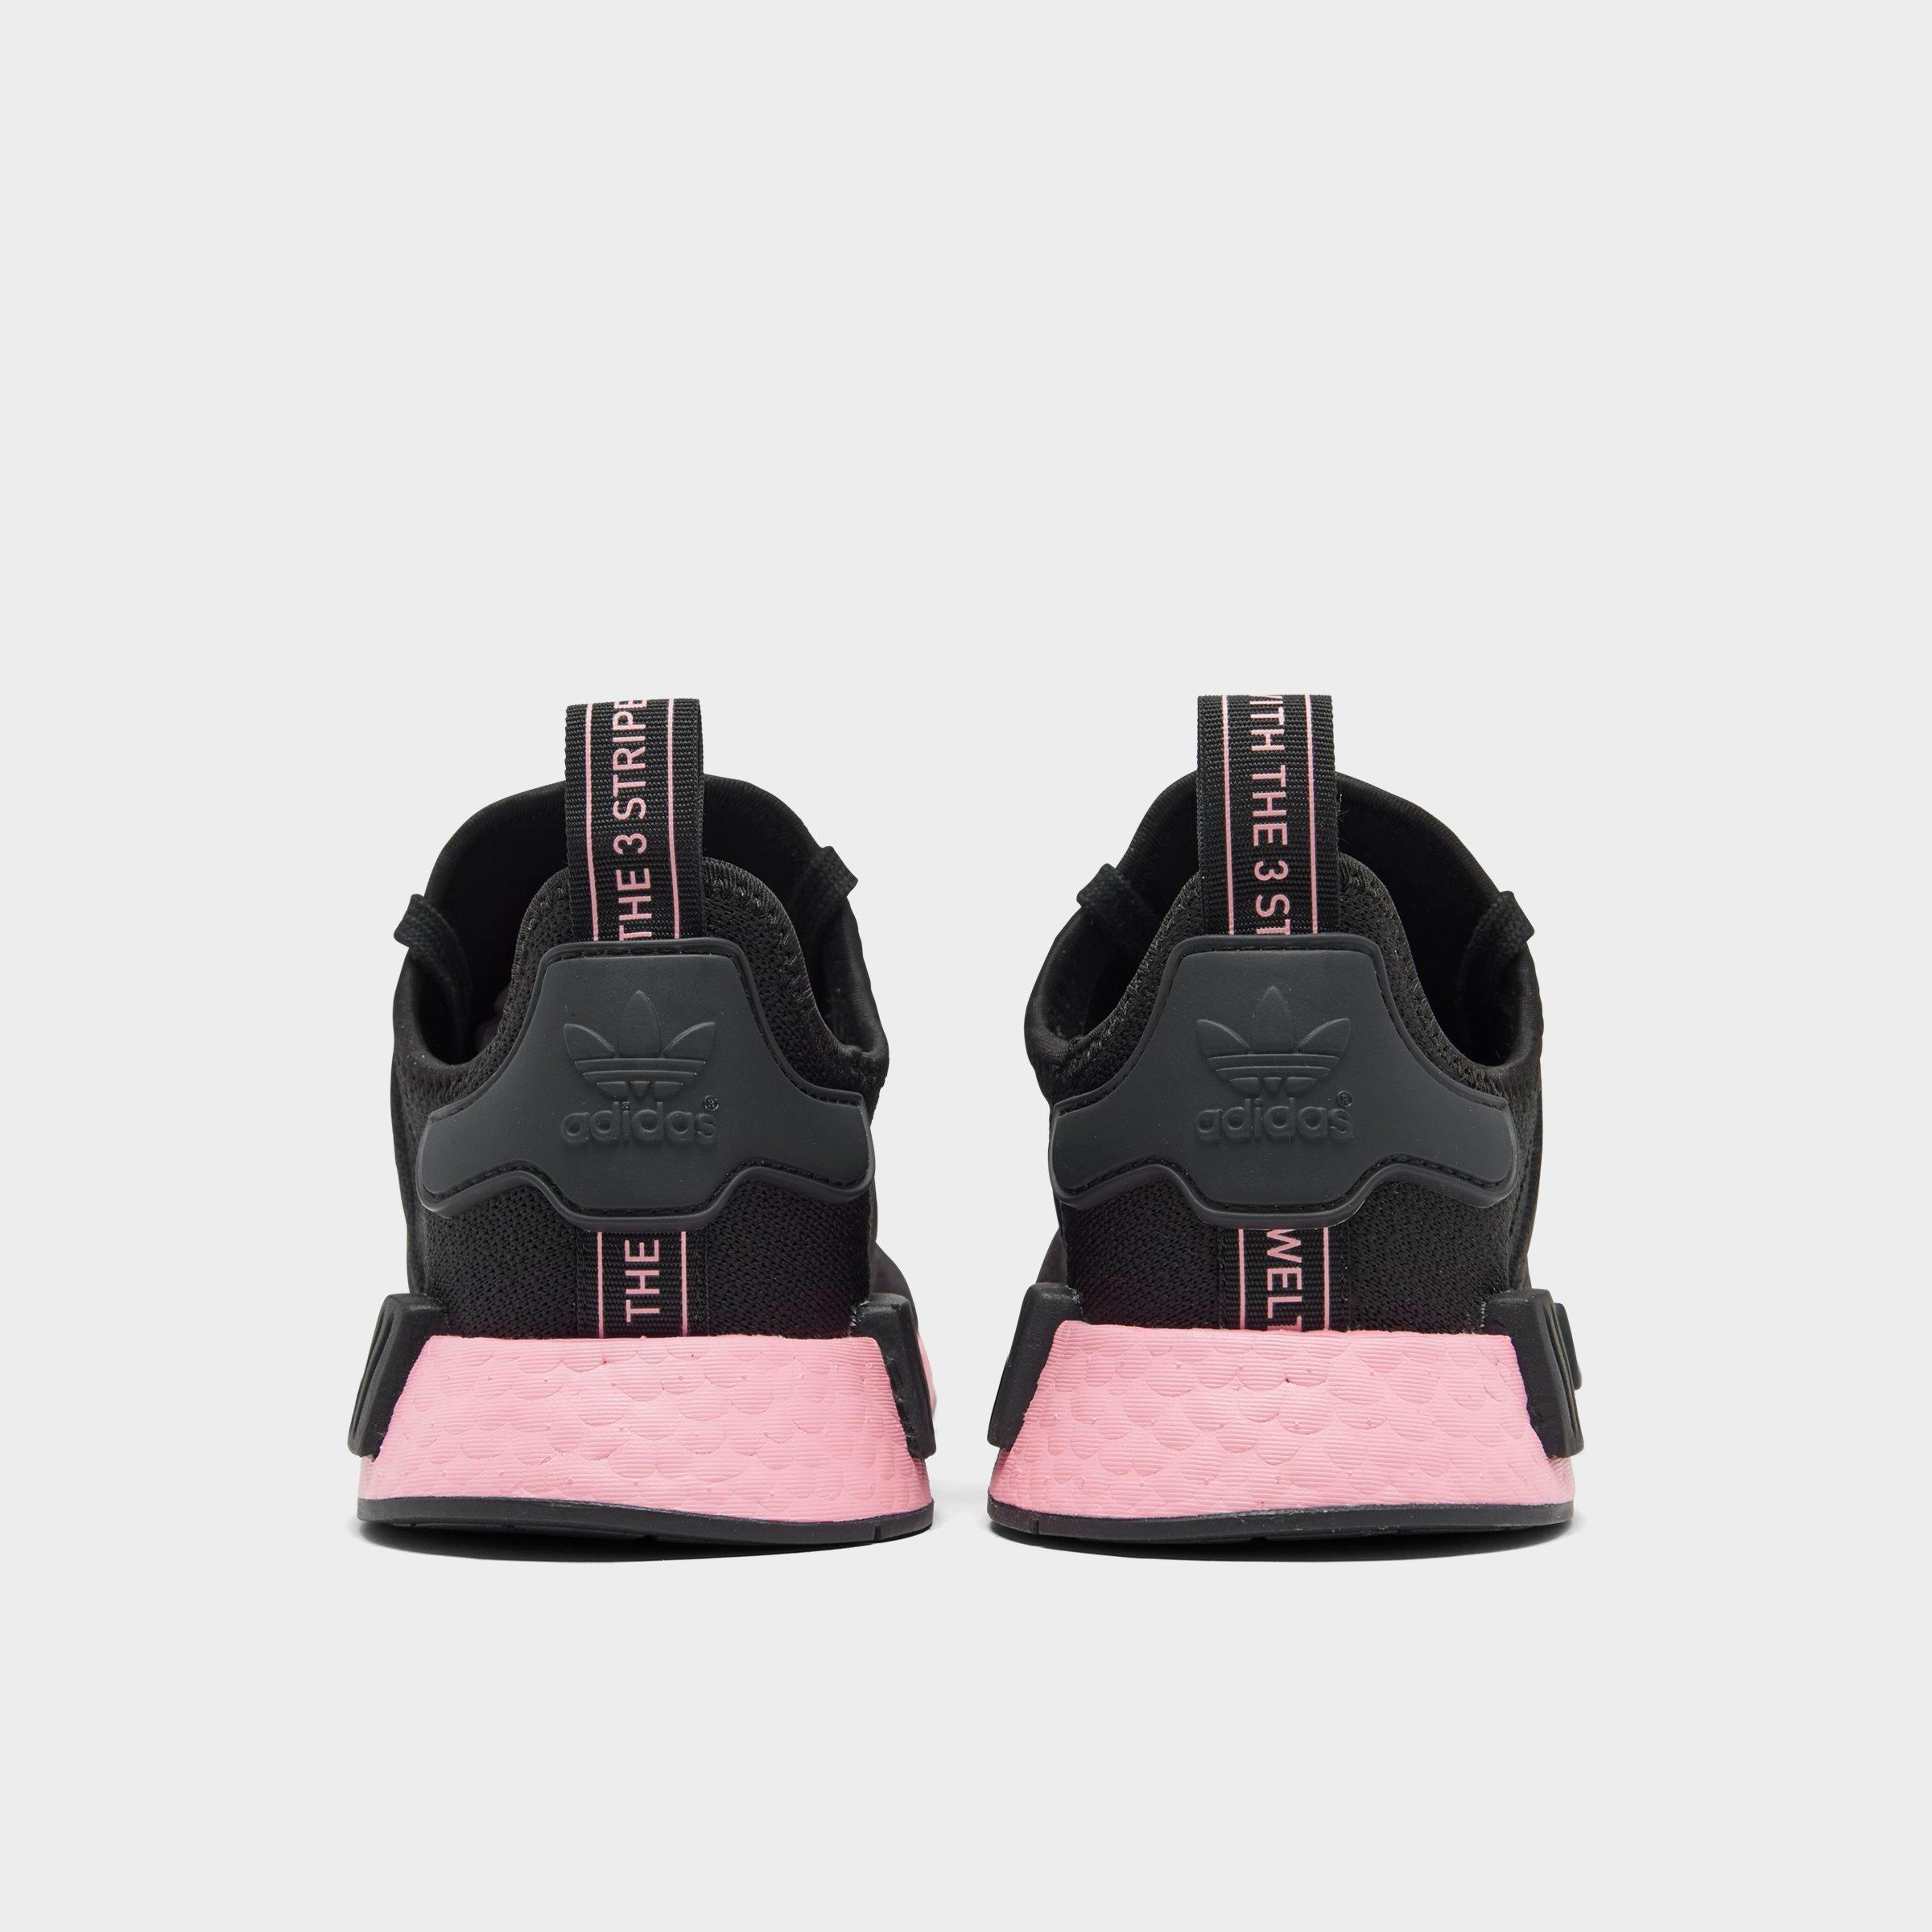 hot pink nmd adidas